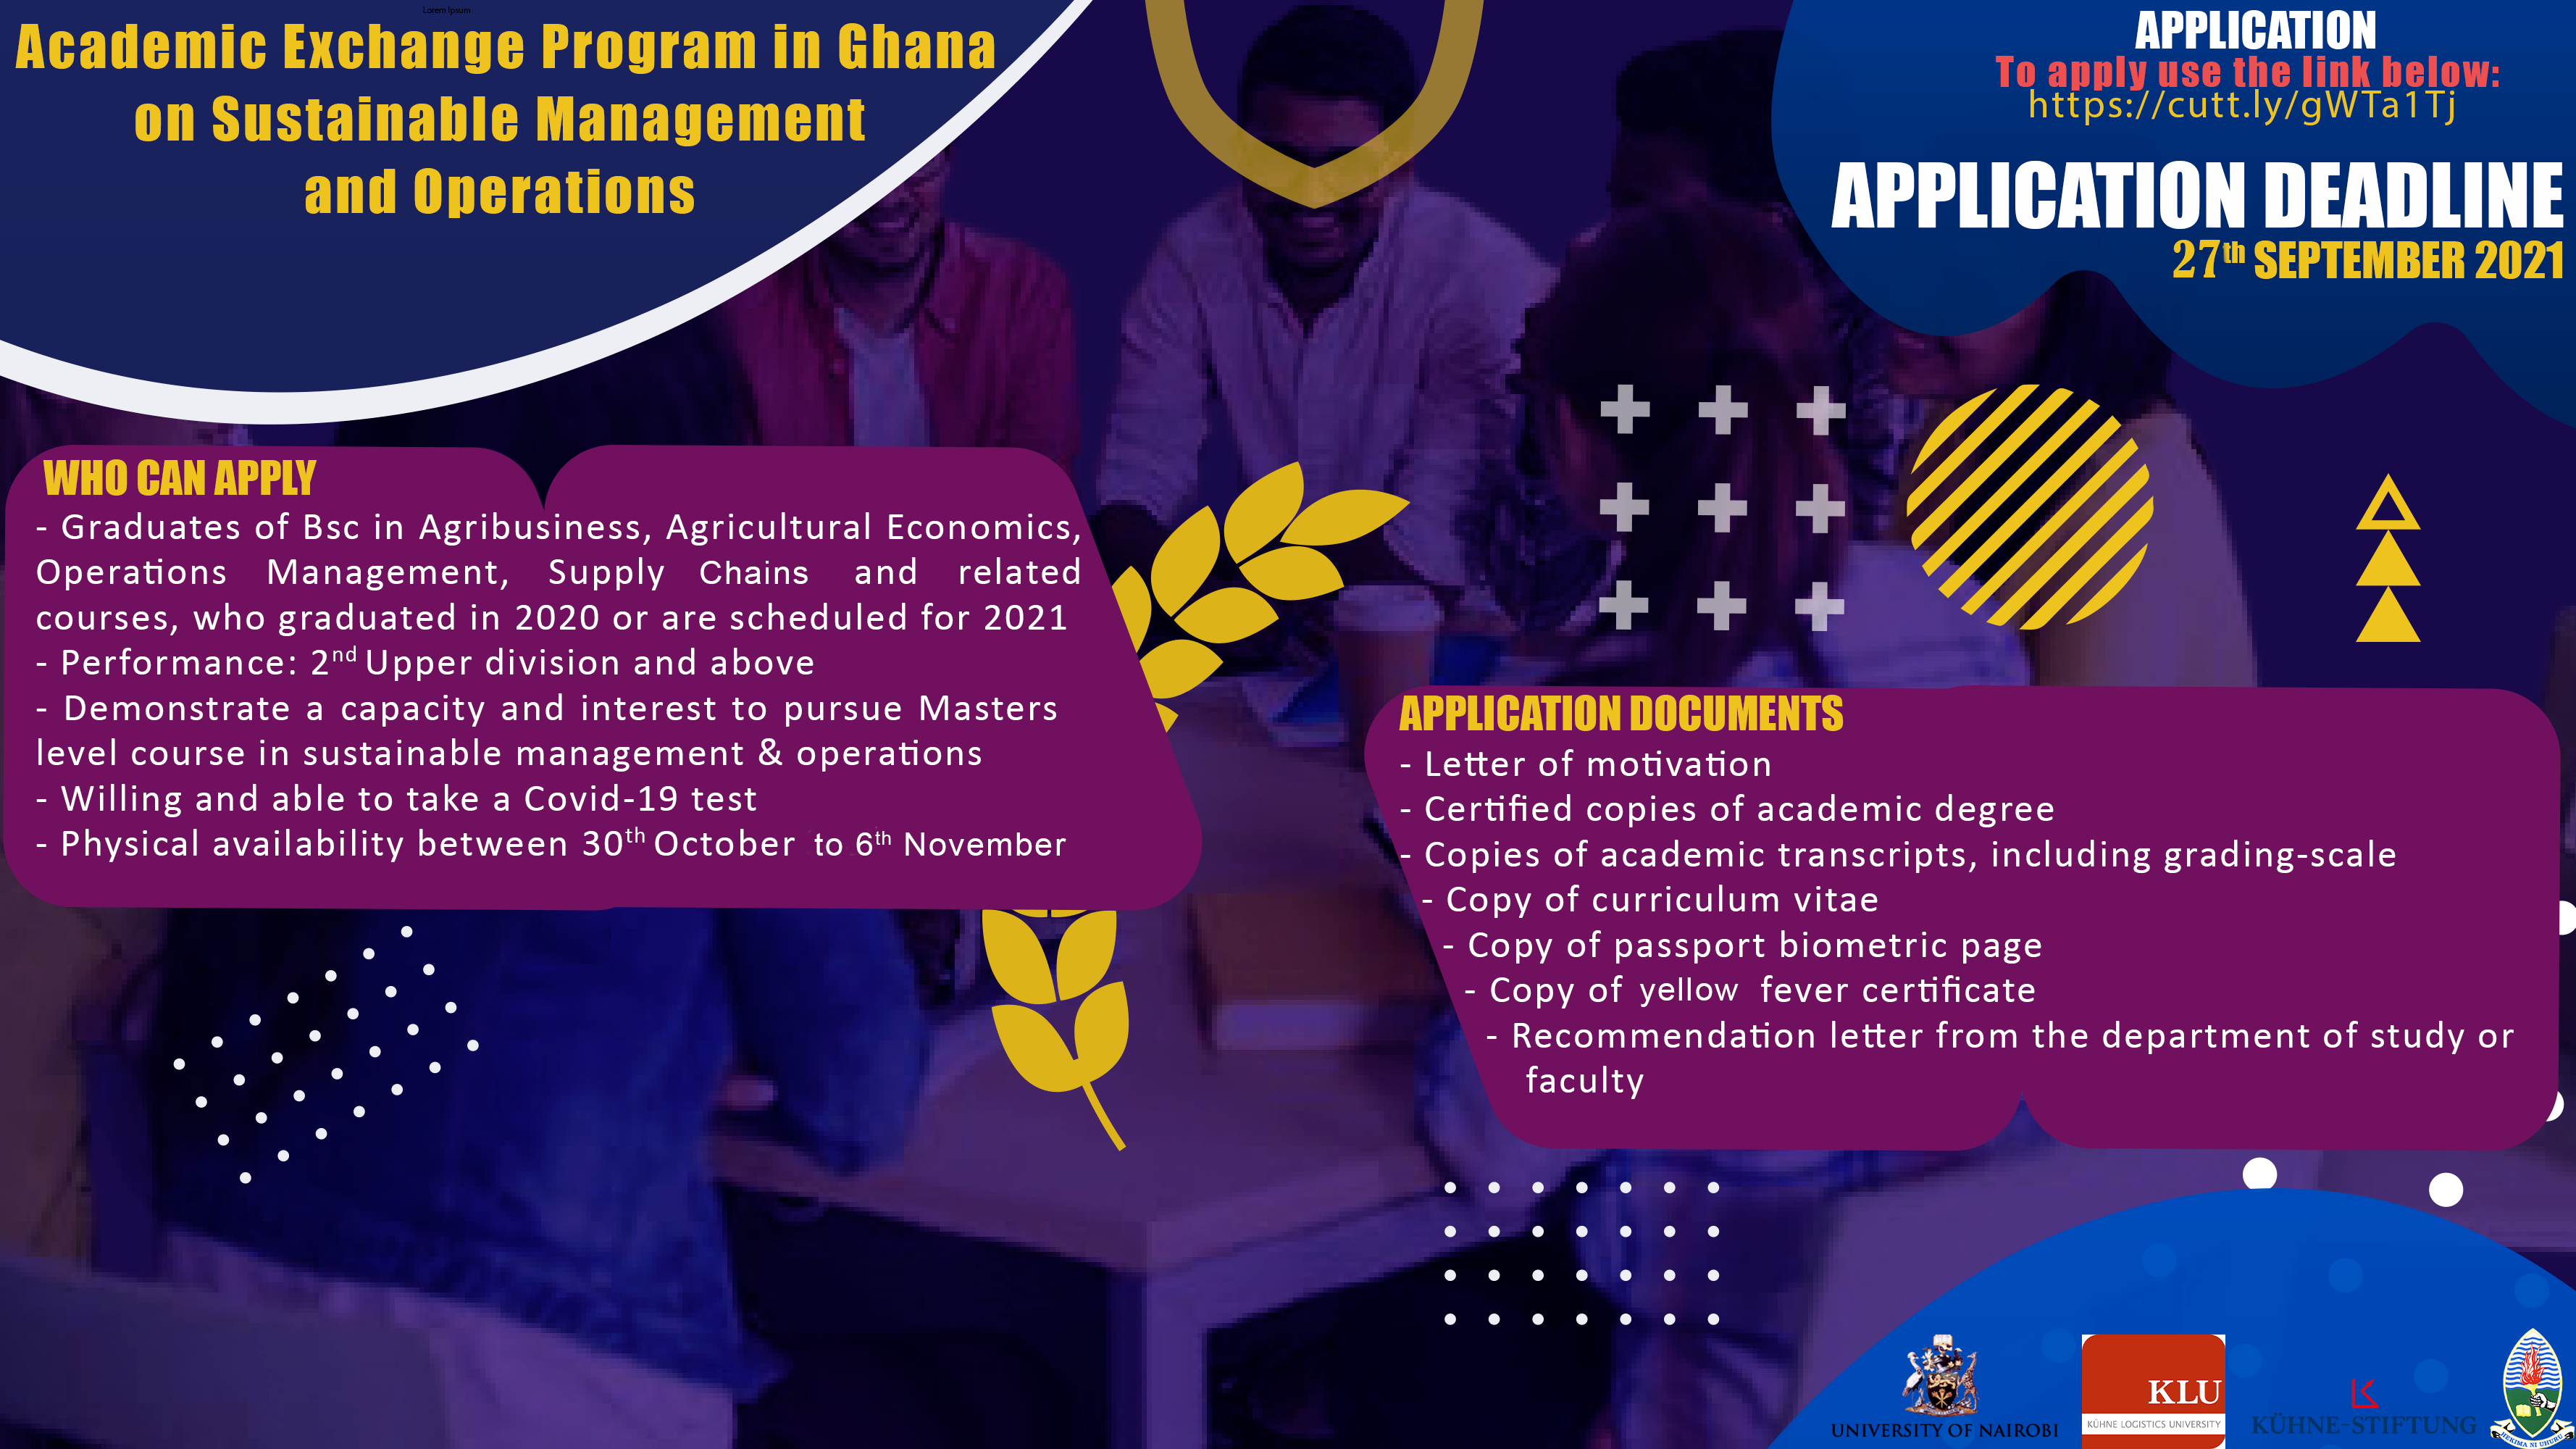 University of Nairobi Academic Exchange Program with Ghana